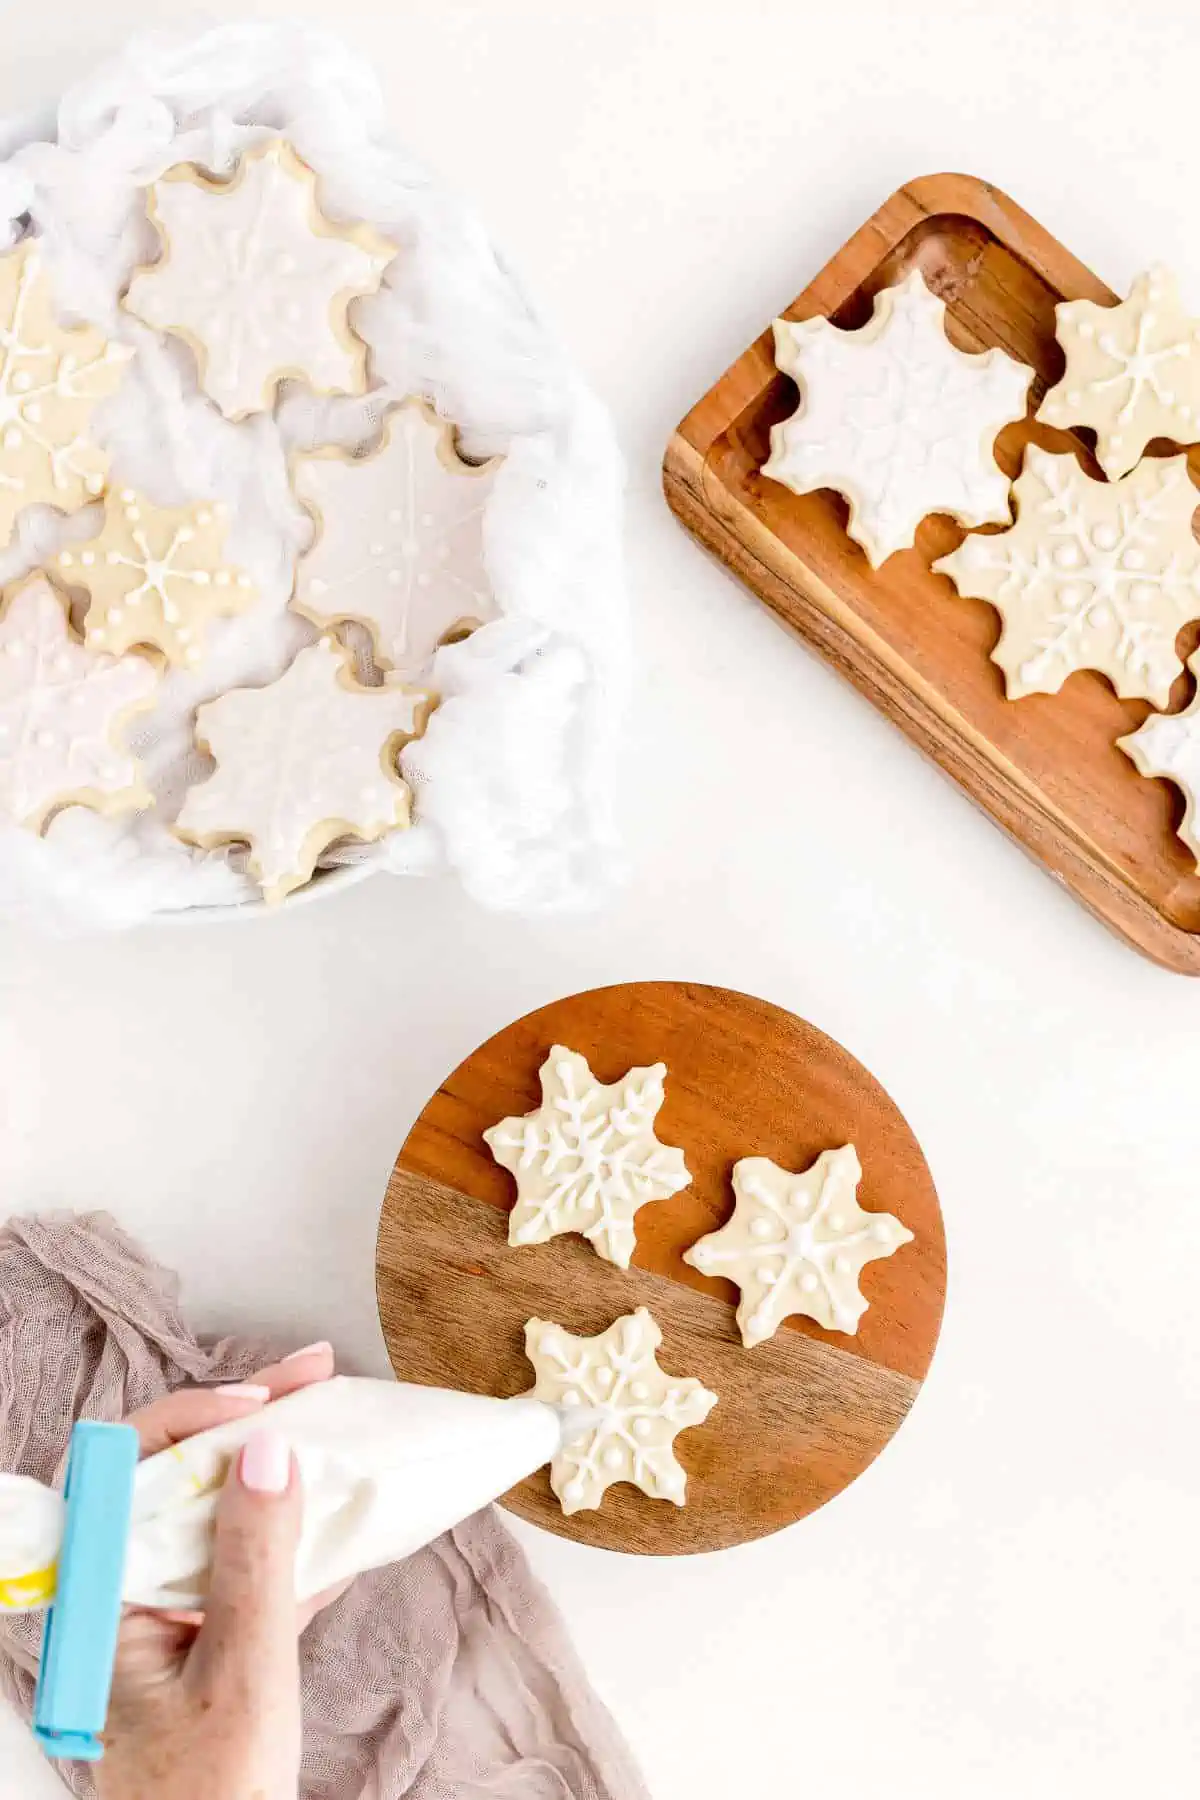 Hand piping vegan royal icing onto sugar cookies shaped like a snowflake.